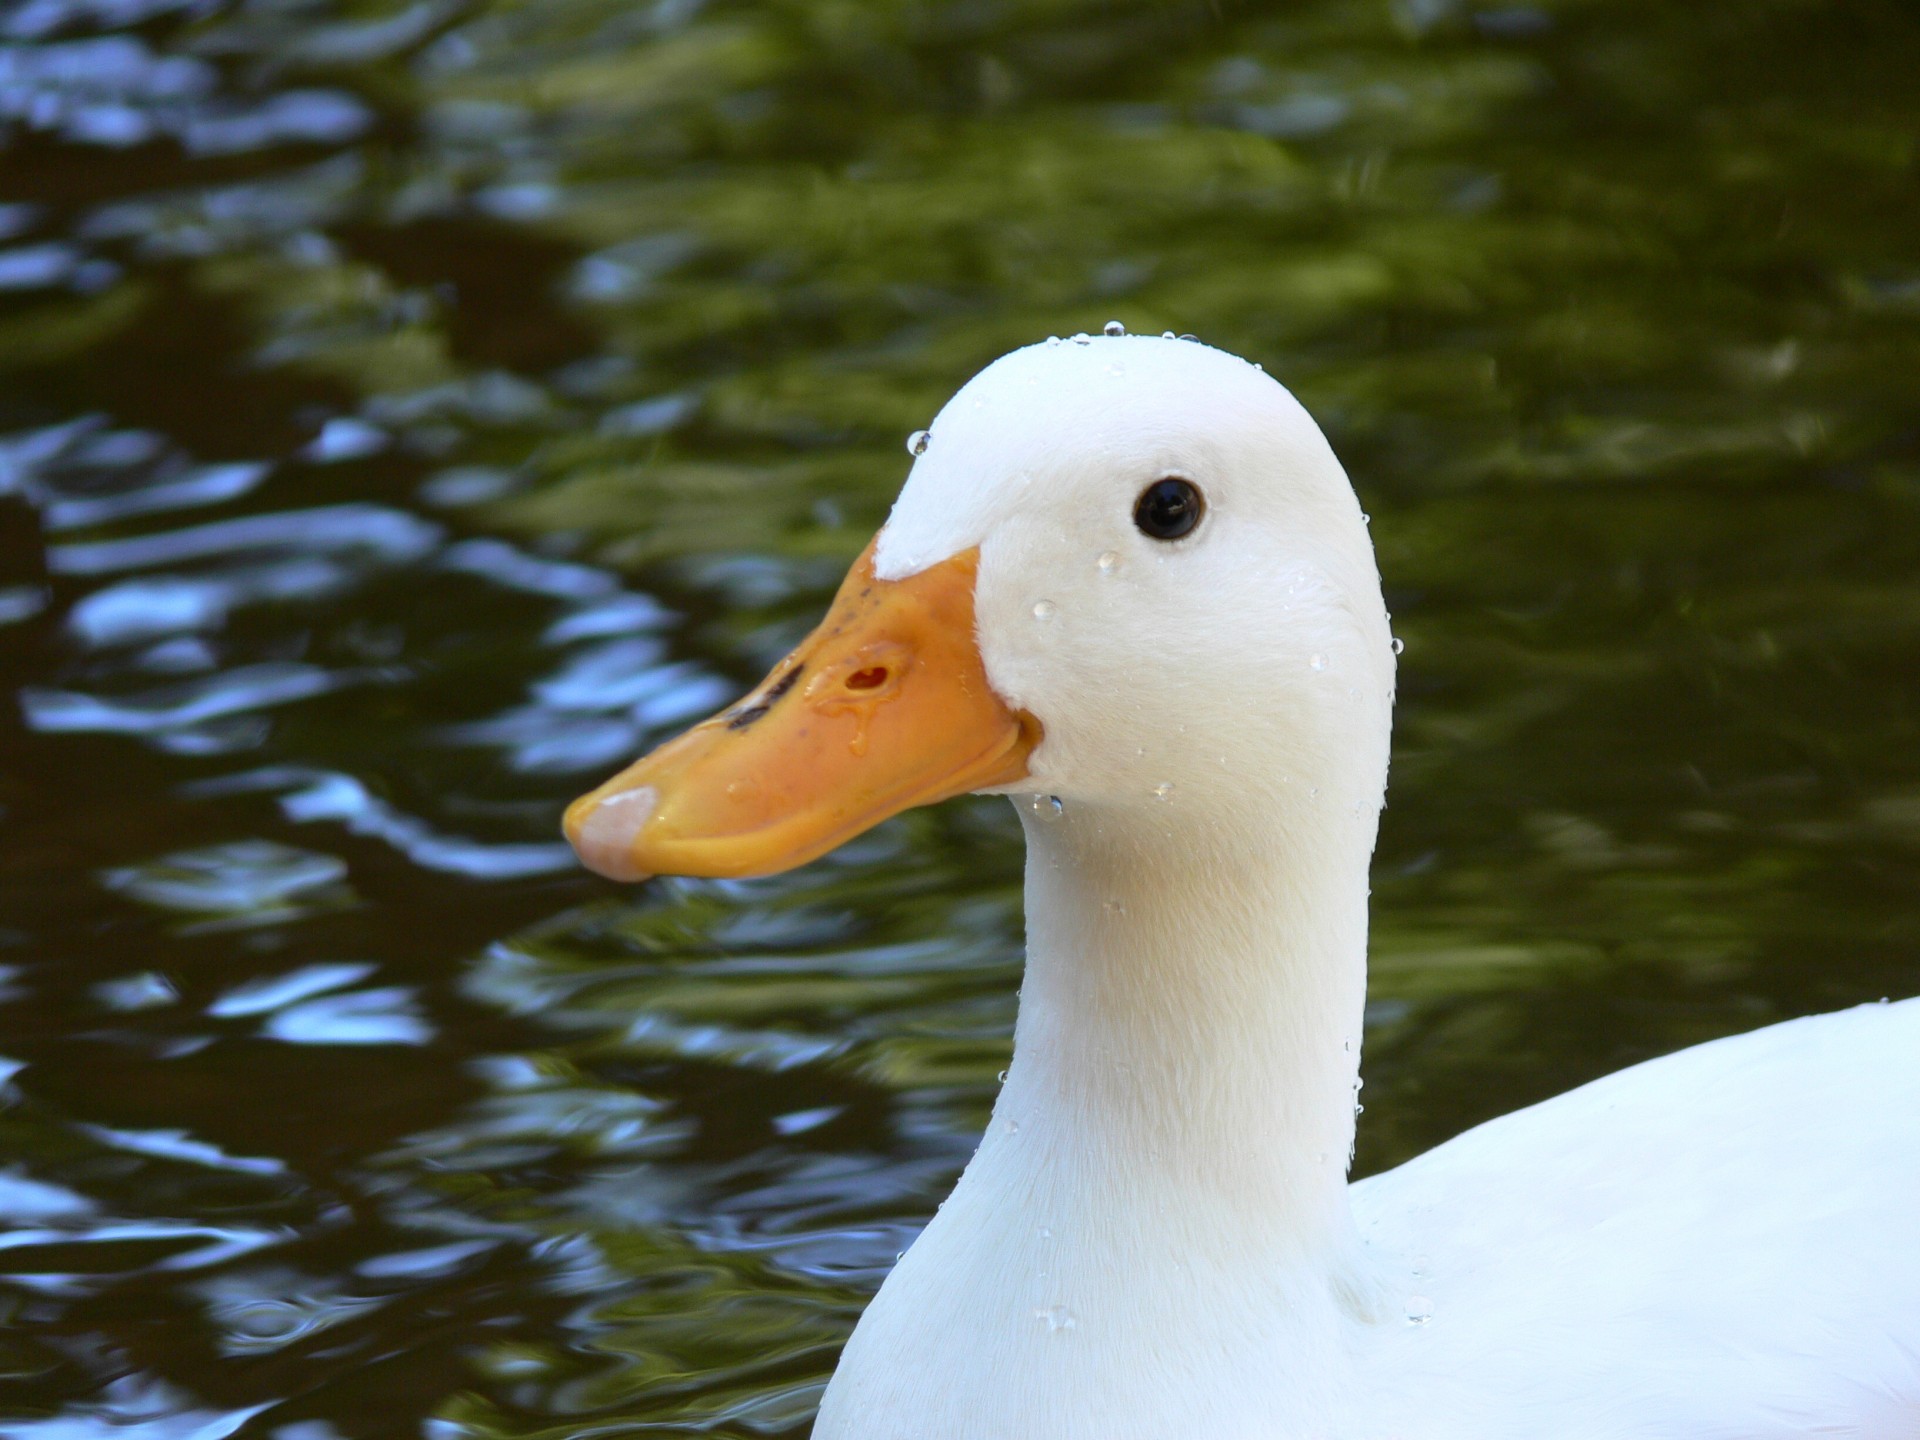 White duck in still pond